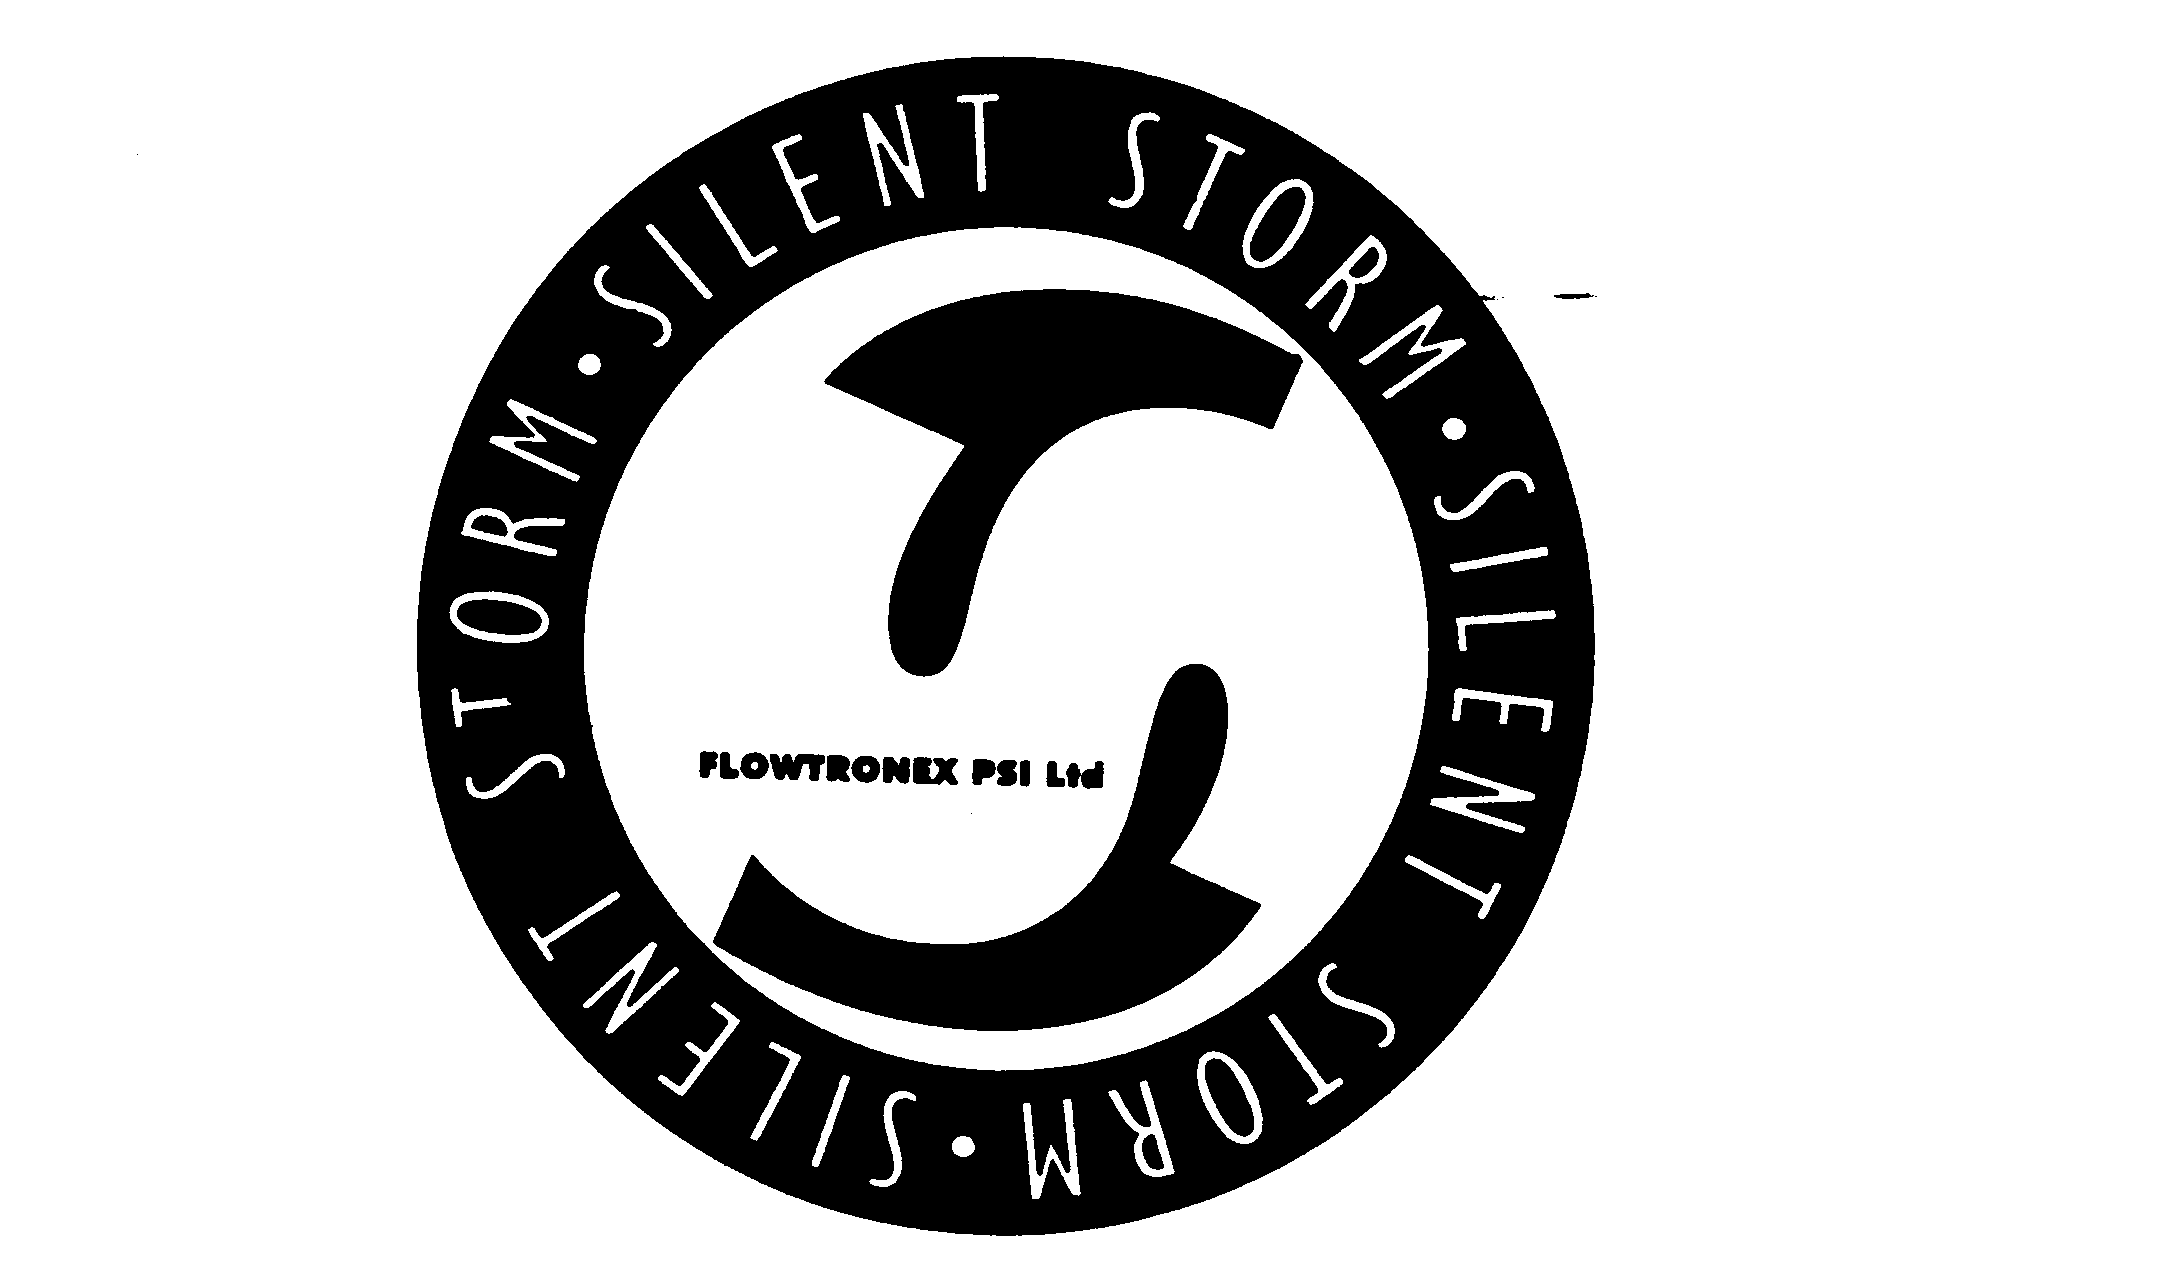  SILENT STORM FLOWTRONEX PSI LTD